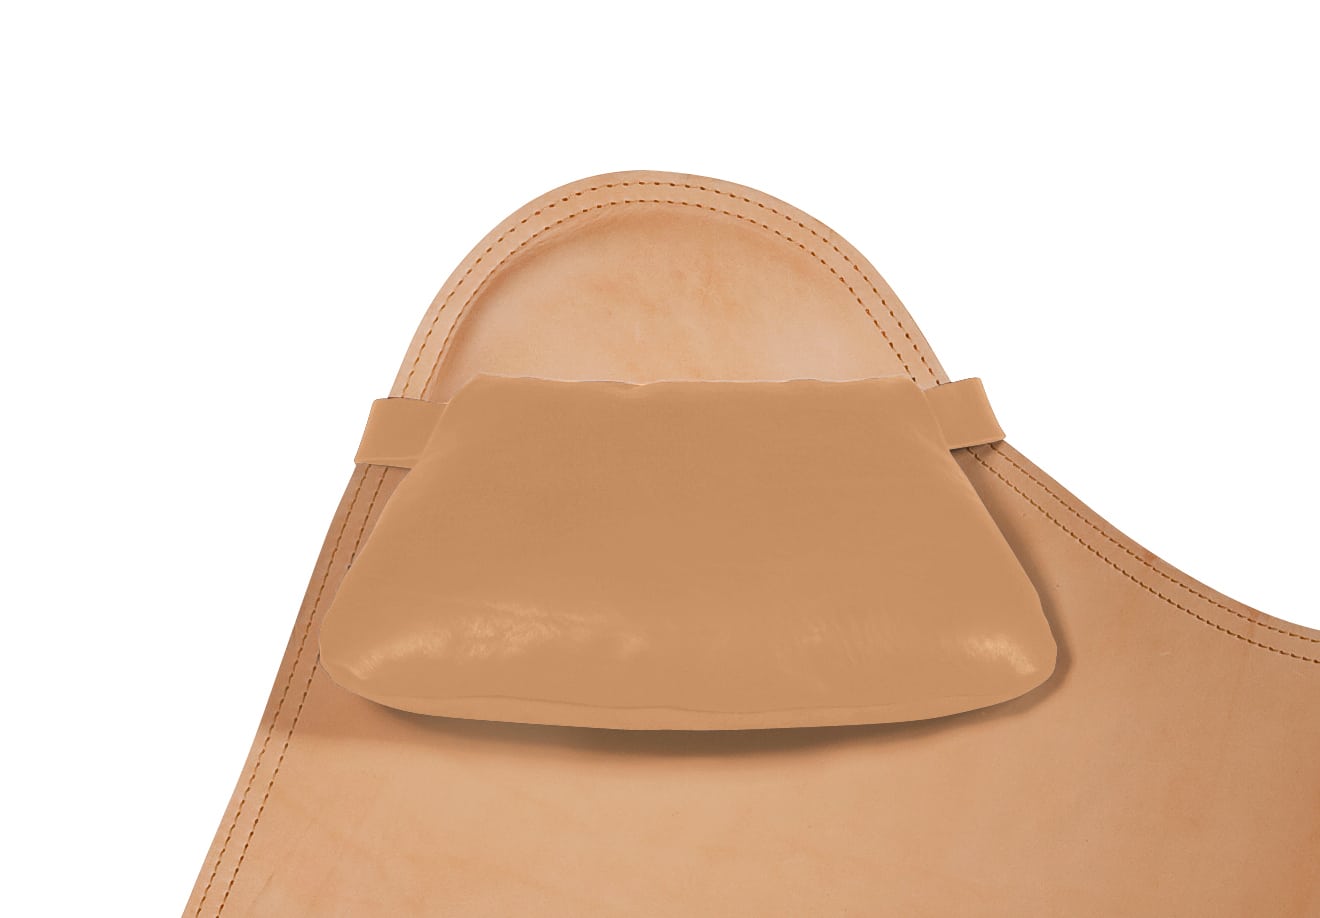 [쿠에로 cuero] 버터플라이 체어 가죽 쿠션  / Leather Cushion for Butterfly Chair